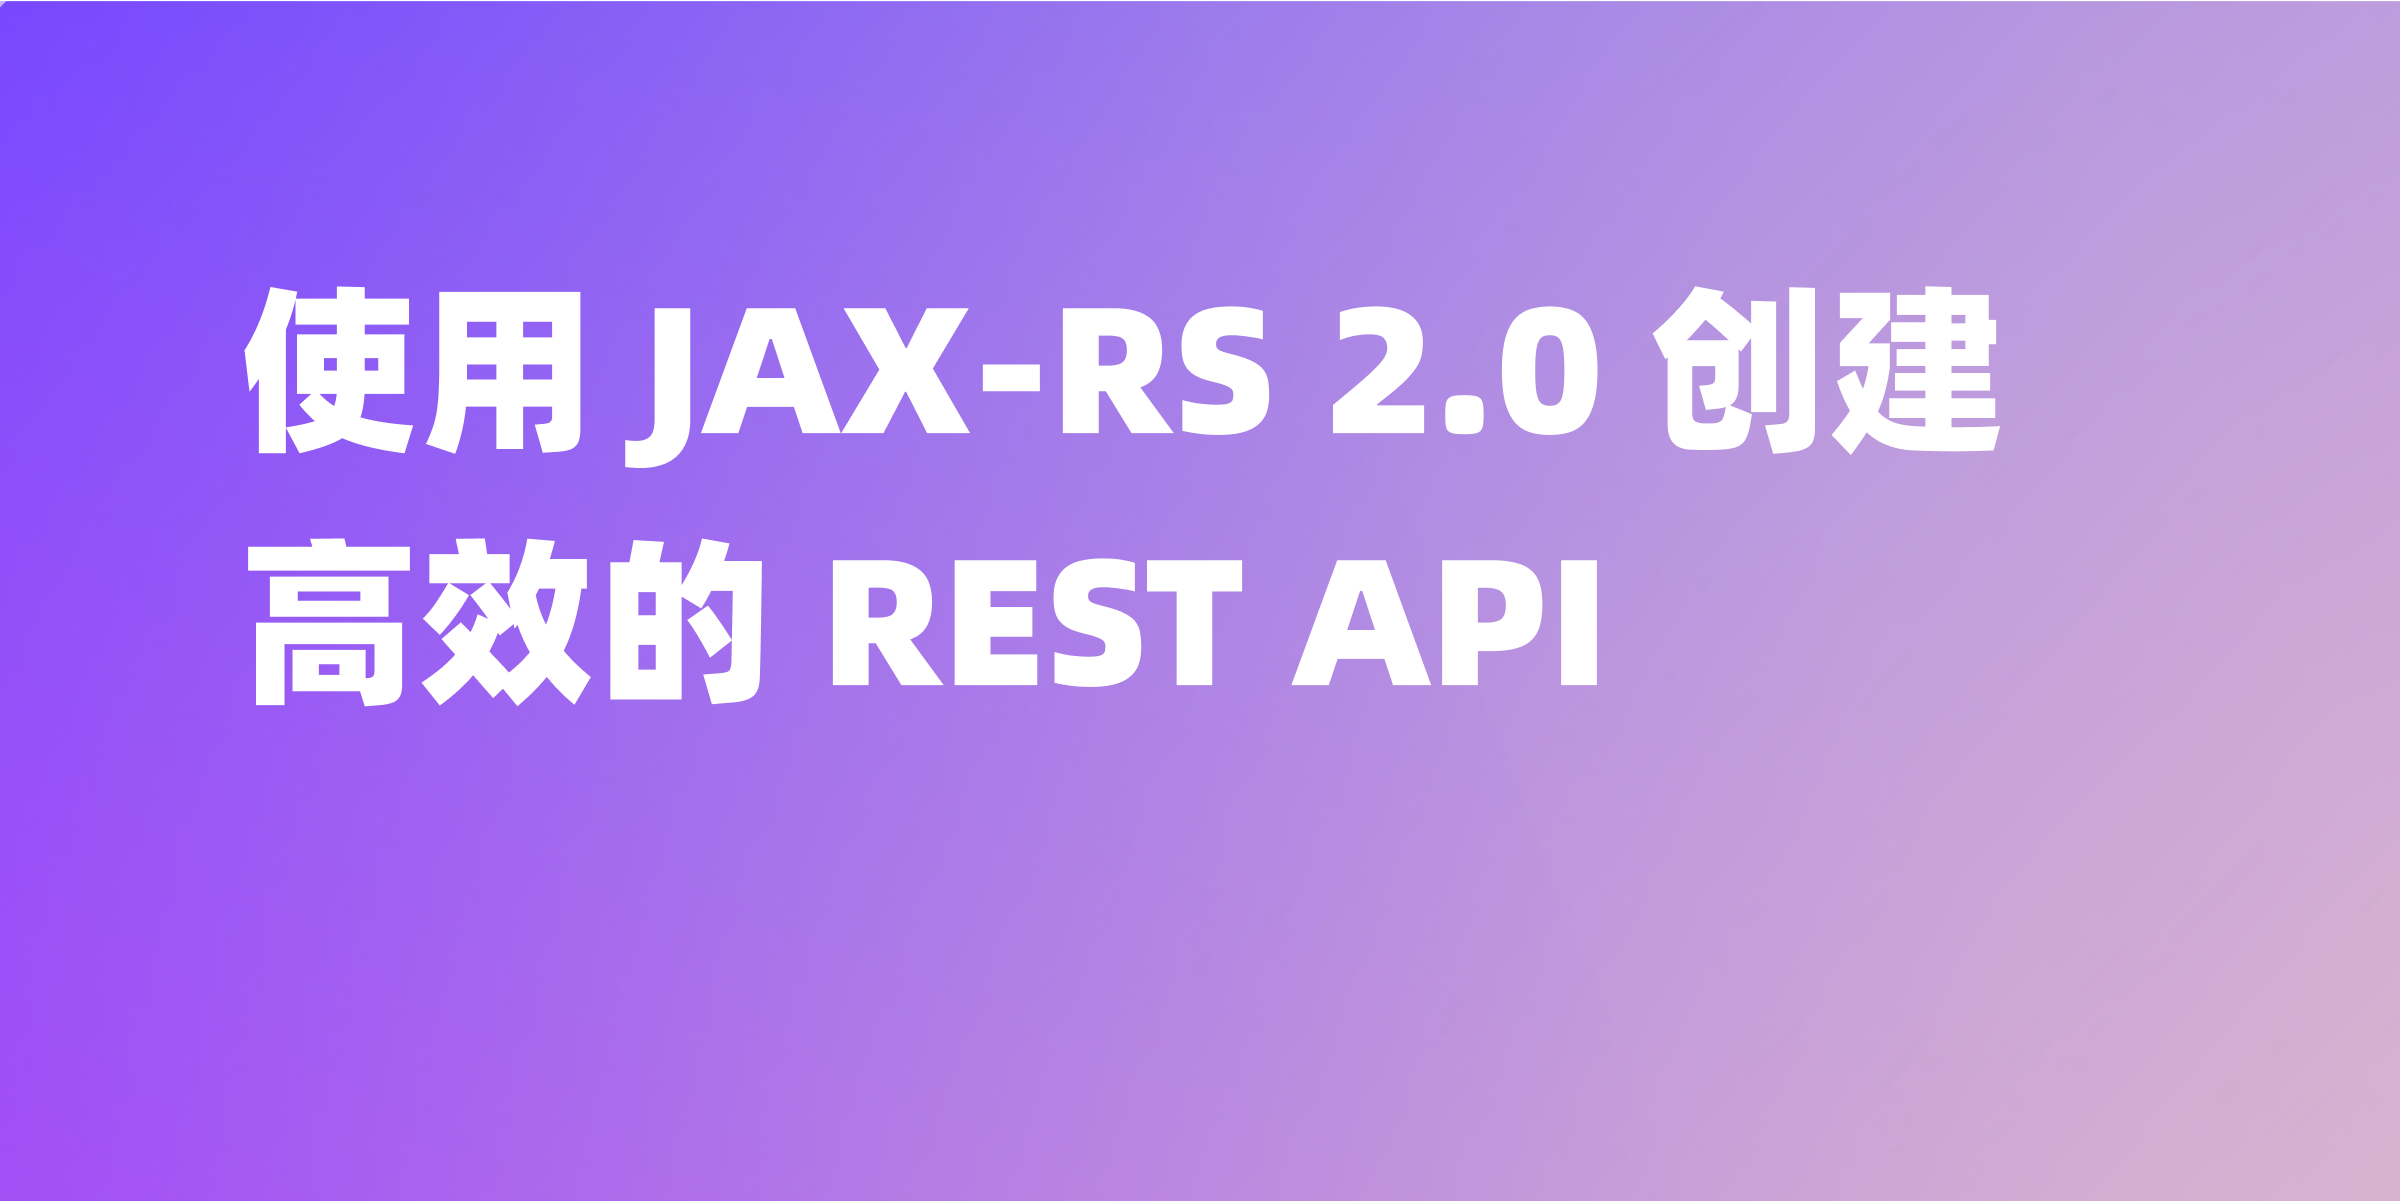 使用 JAX-RS 2.0 快速创建 REST API